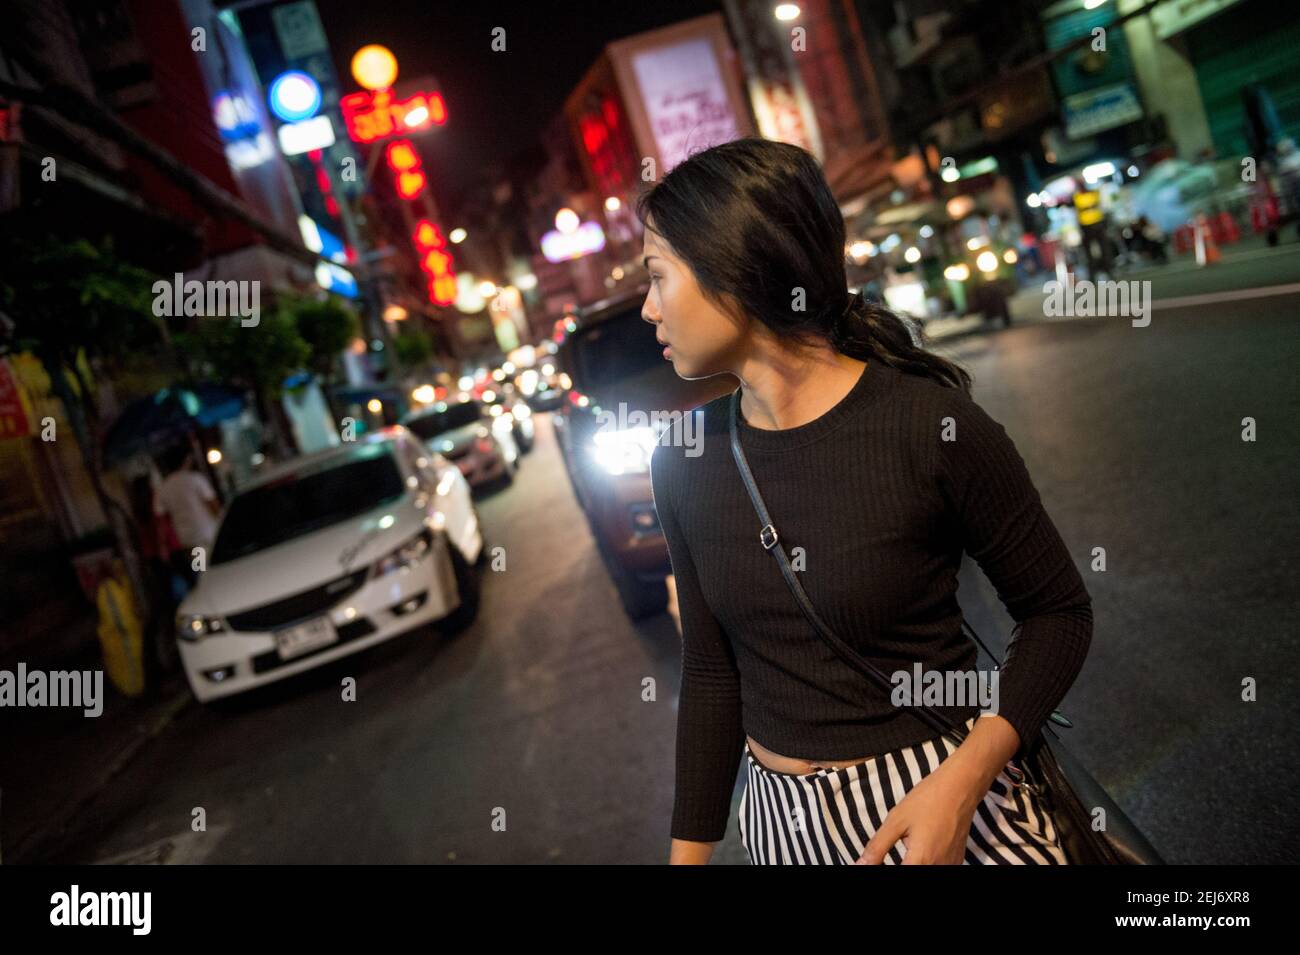 Jeune fille d'Asie belle dans une rue très fréquentée la nuit, marchant tout en regardant en arrière par-dessus son épaule. Feux de la ville et circulation en arrière-plan. Banque D'Images